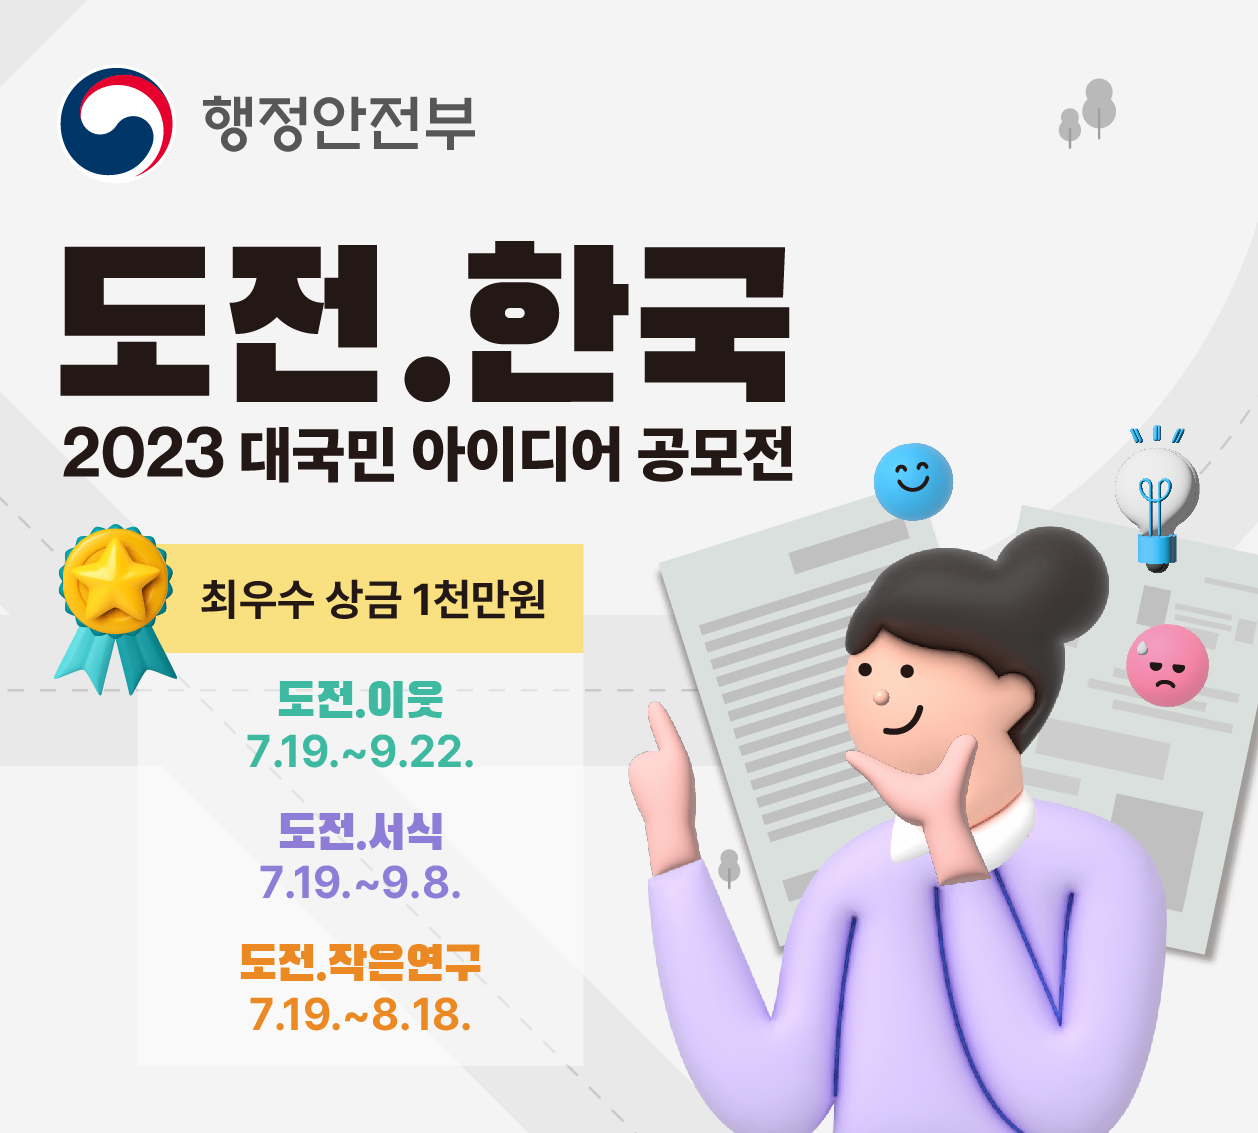 2023년 '도전.한국' 하반기 공모전 개최 안내 1